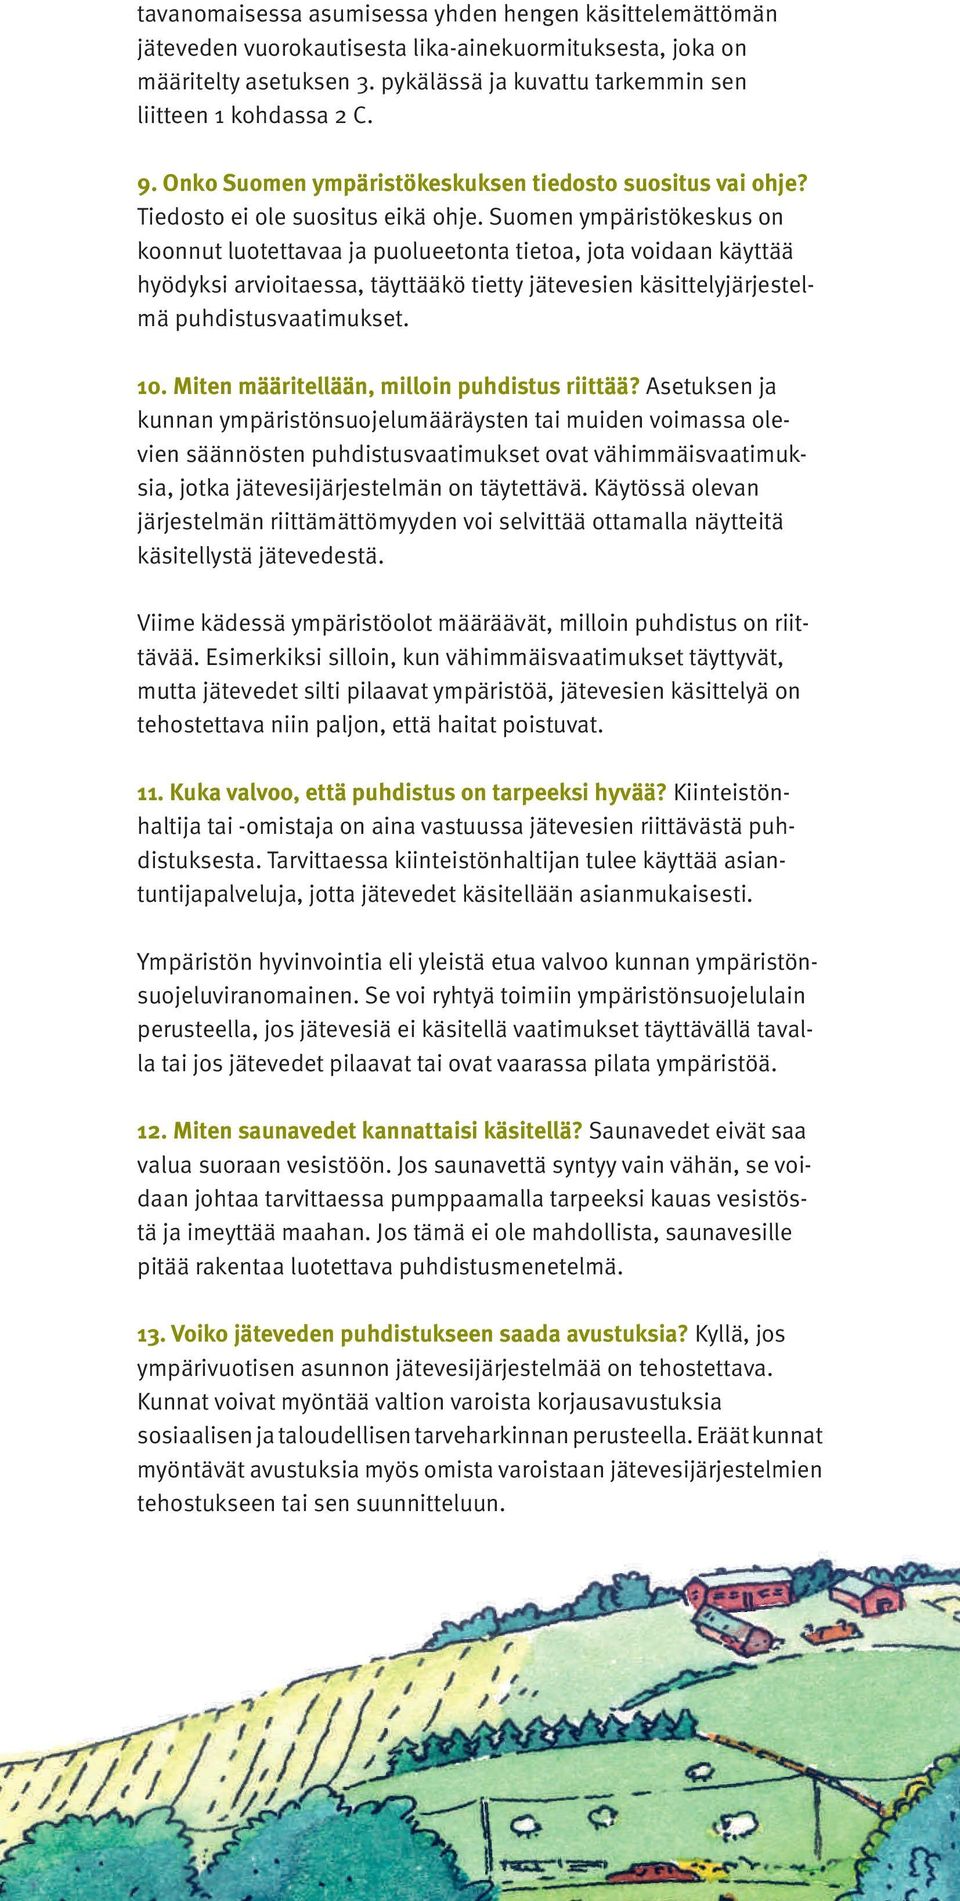 Suomen ympäristökeskus on koonnut luotettavaa ja puolueetonta tietoa, jota voidaan käyttää hyödyksi arvioitaessa, täyttääkö tietty jätevesien käsittelyjärjestelmä puhdistusvaatimukset. 10.